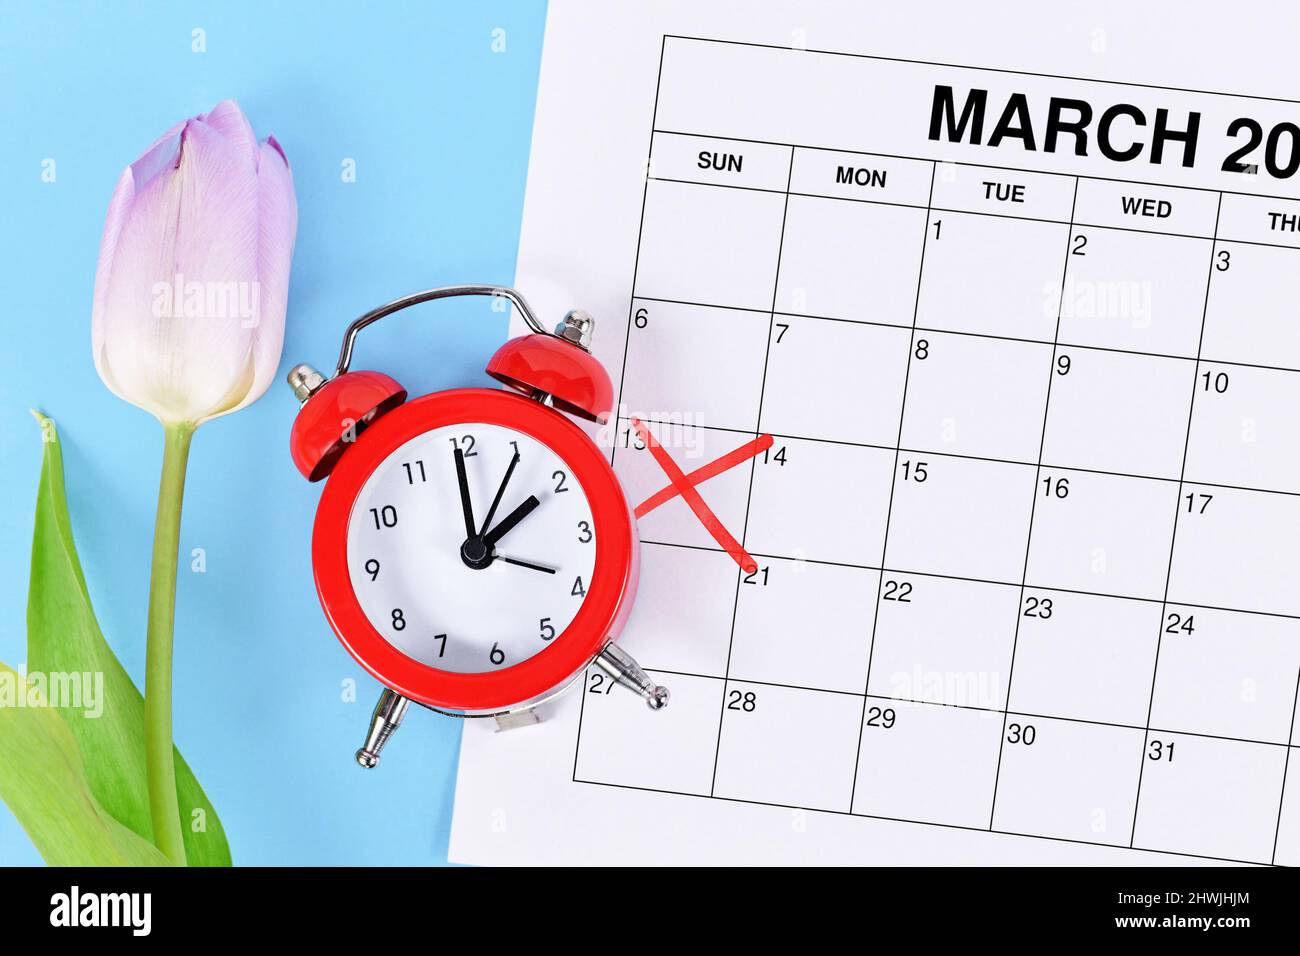 Concepto de cambio de hora para el horario de verano en Estados Unidos el 13th de marzo con reloj de alarma rojo y hoja de calendario con fecha marcada en rojo en bl Foto de stock